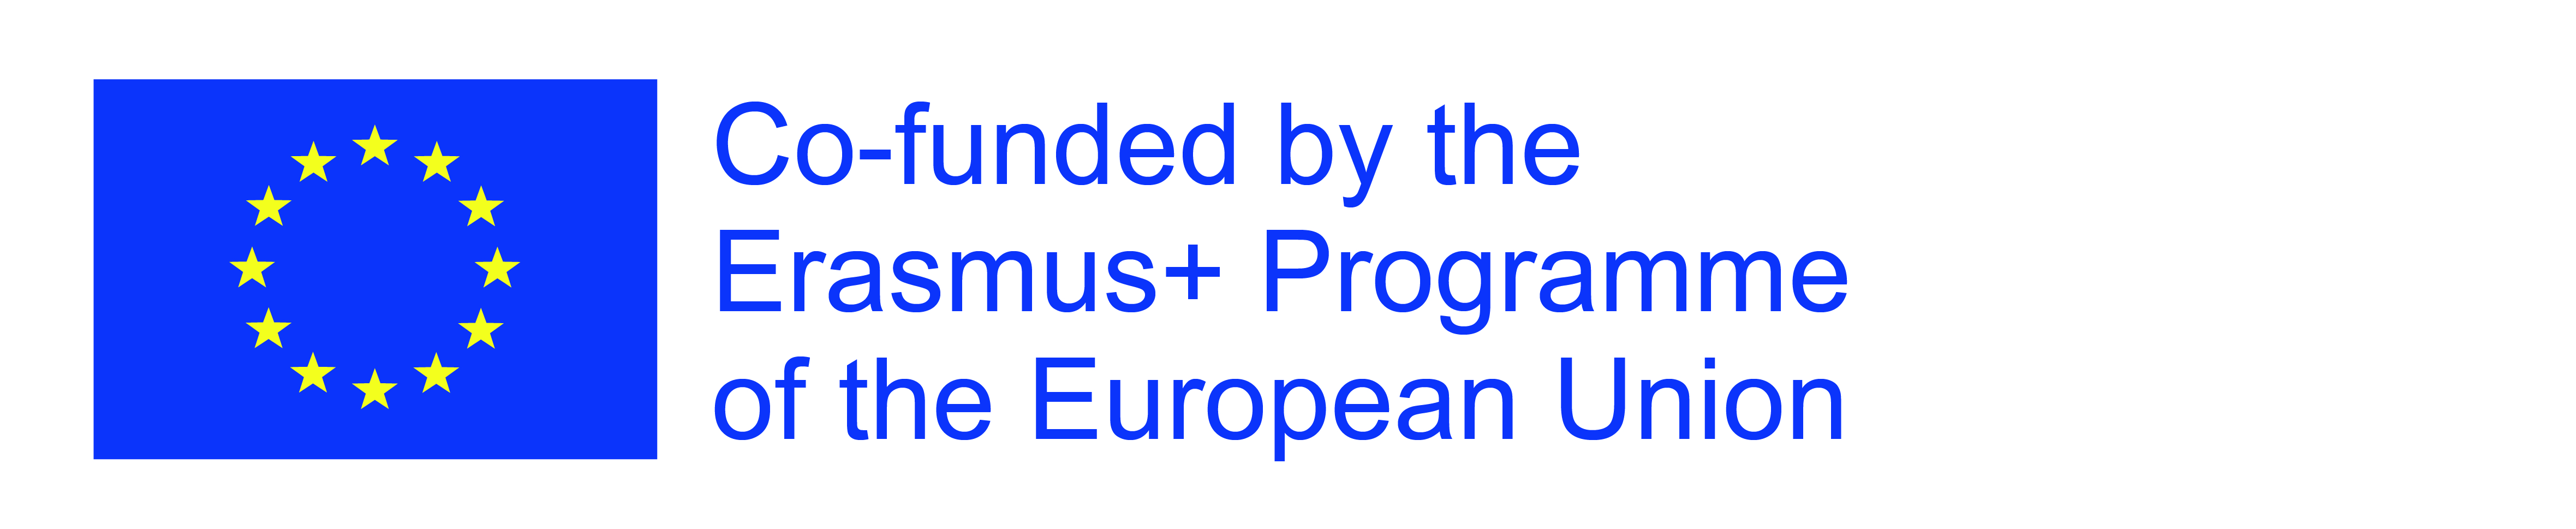 Logotipo ERASMUS+